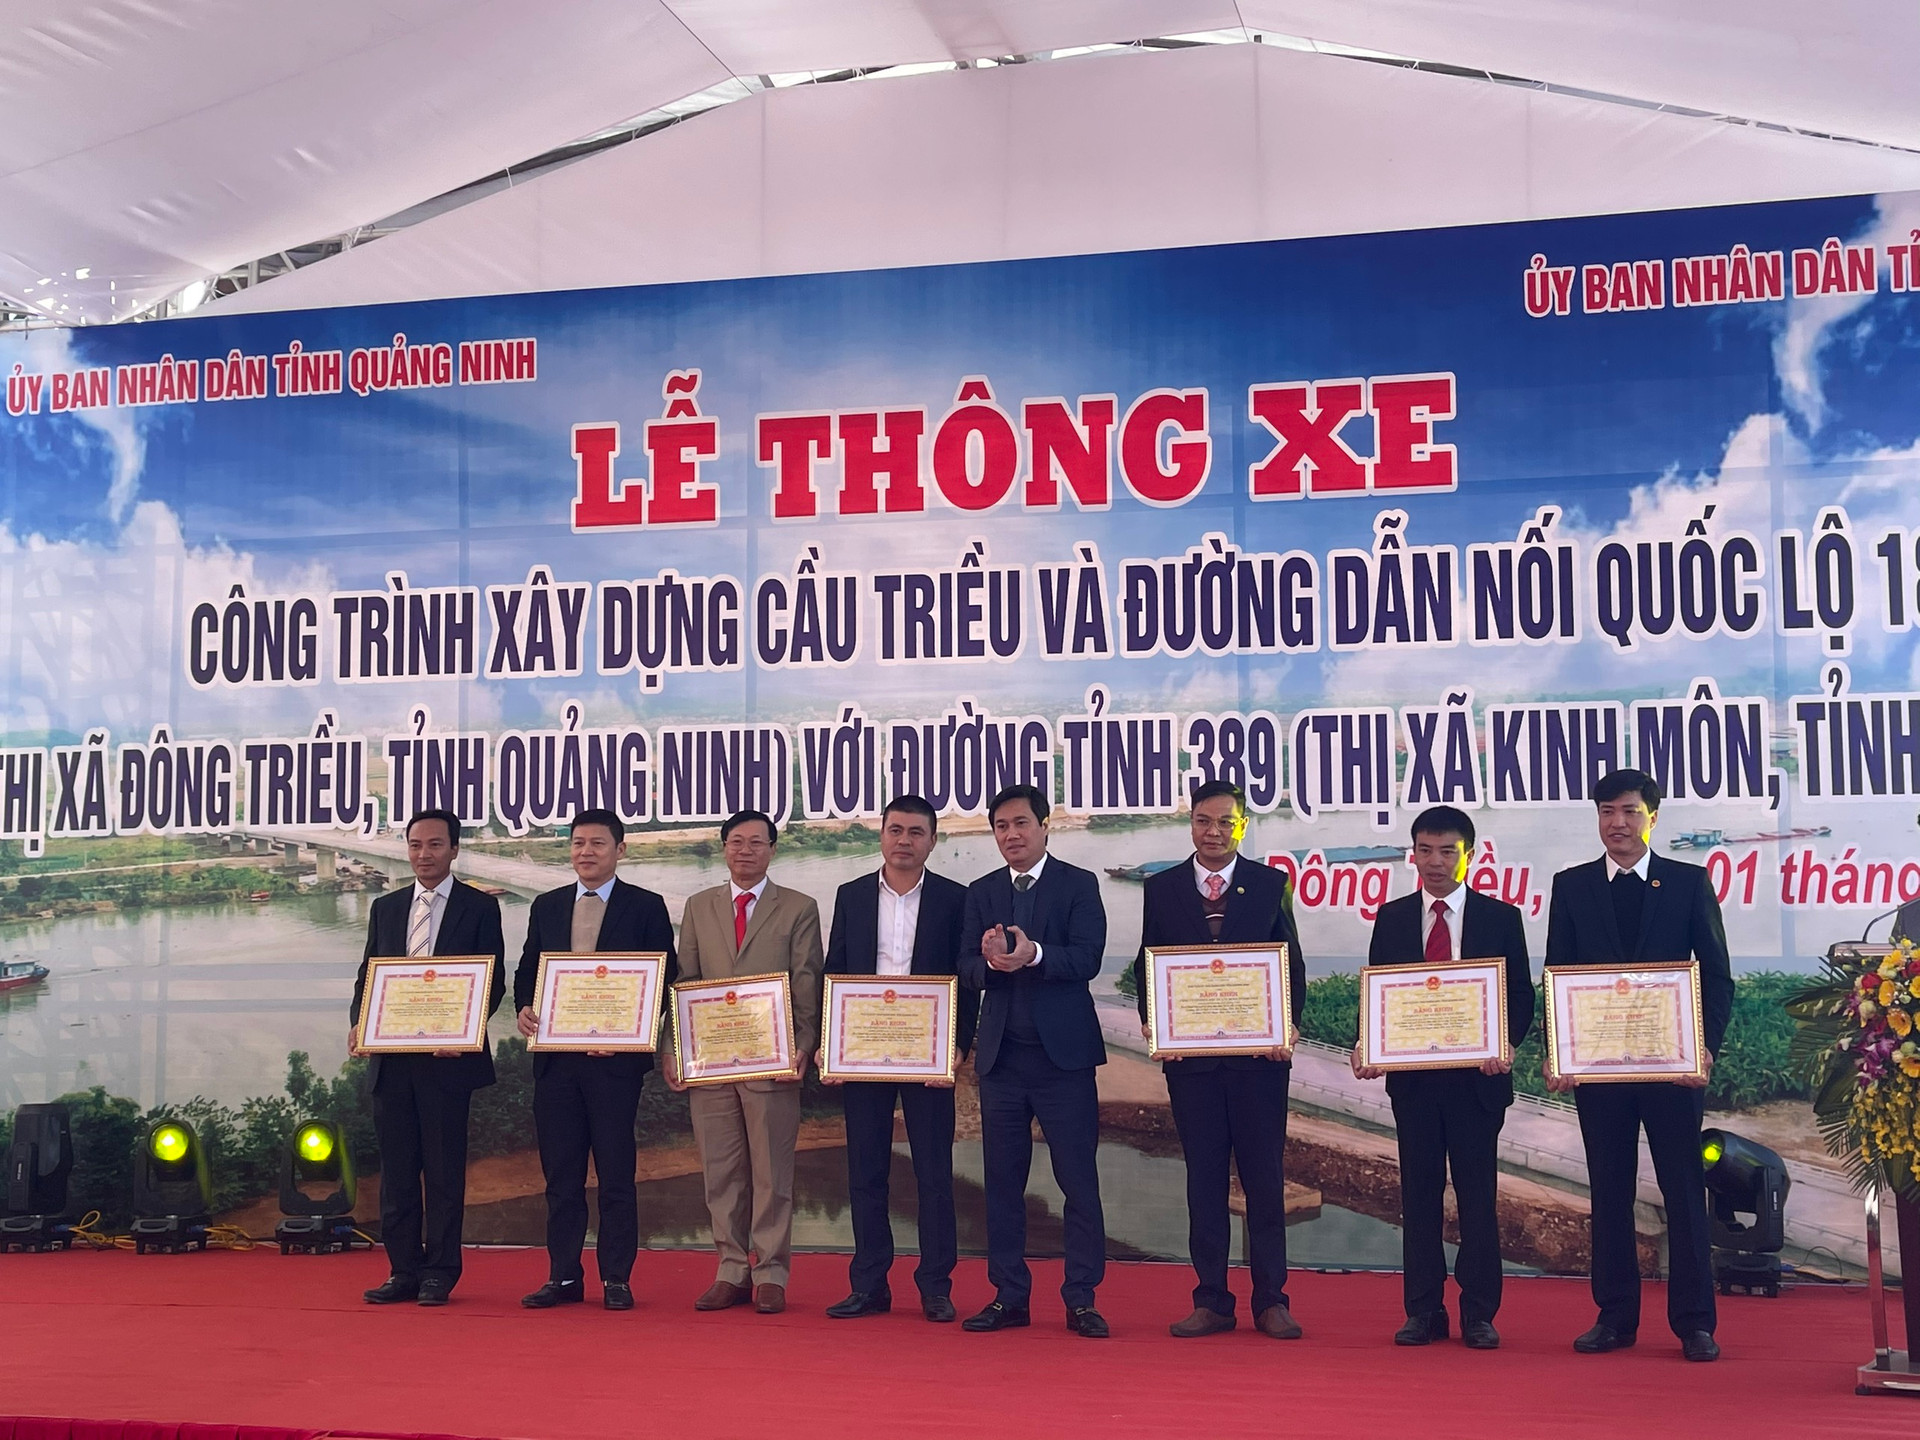 Ông Nguyễn Tường Văn, Chủ tịch UBND tỉnh Quảng Ninh, trao Bằng khen cho 7 tập thể.